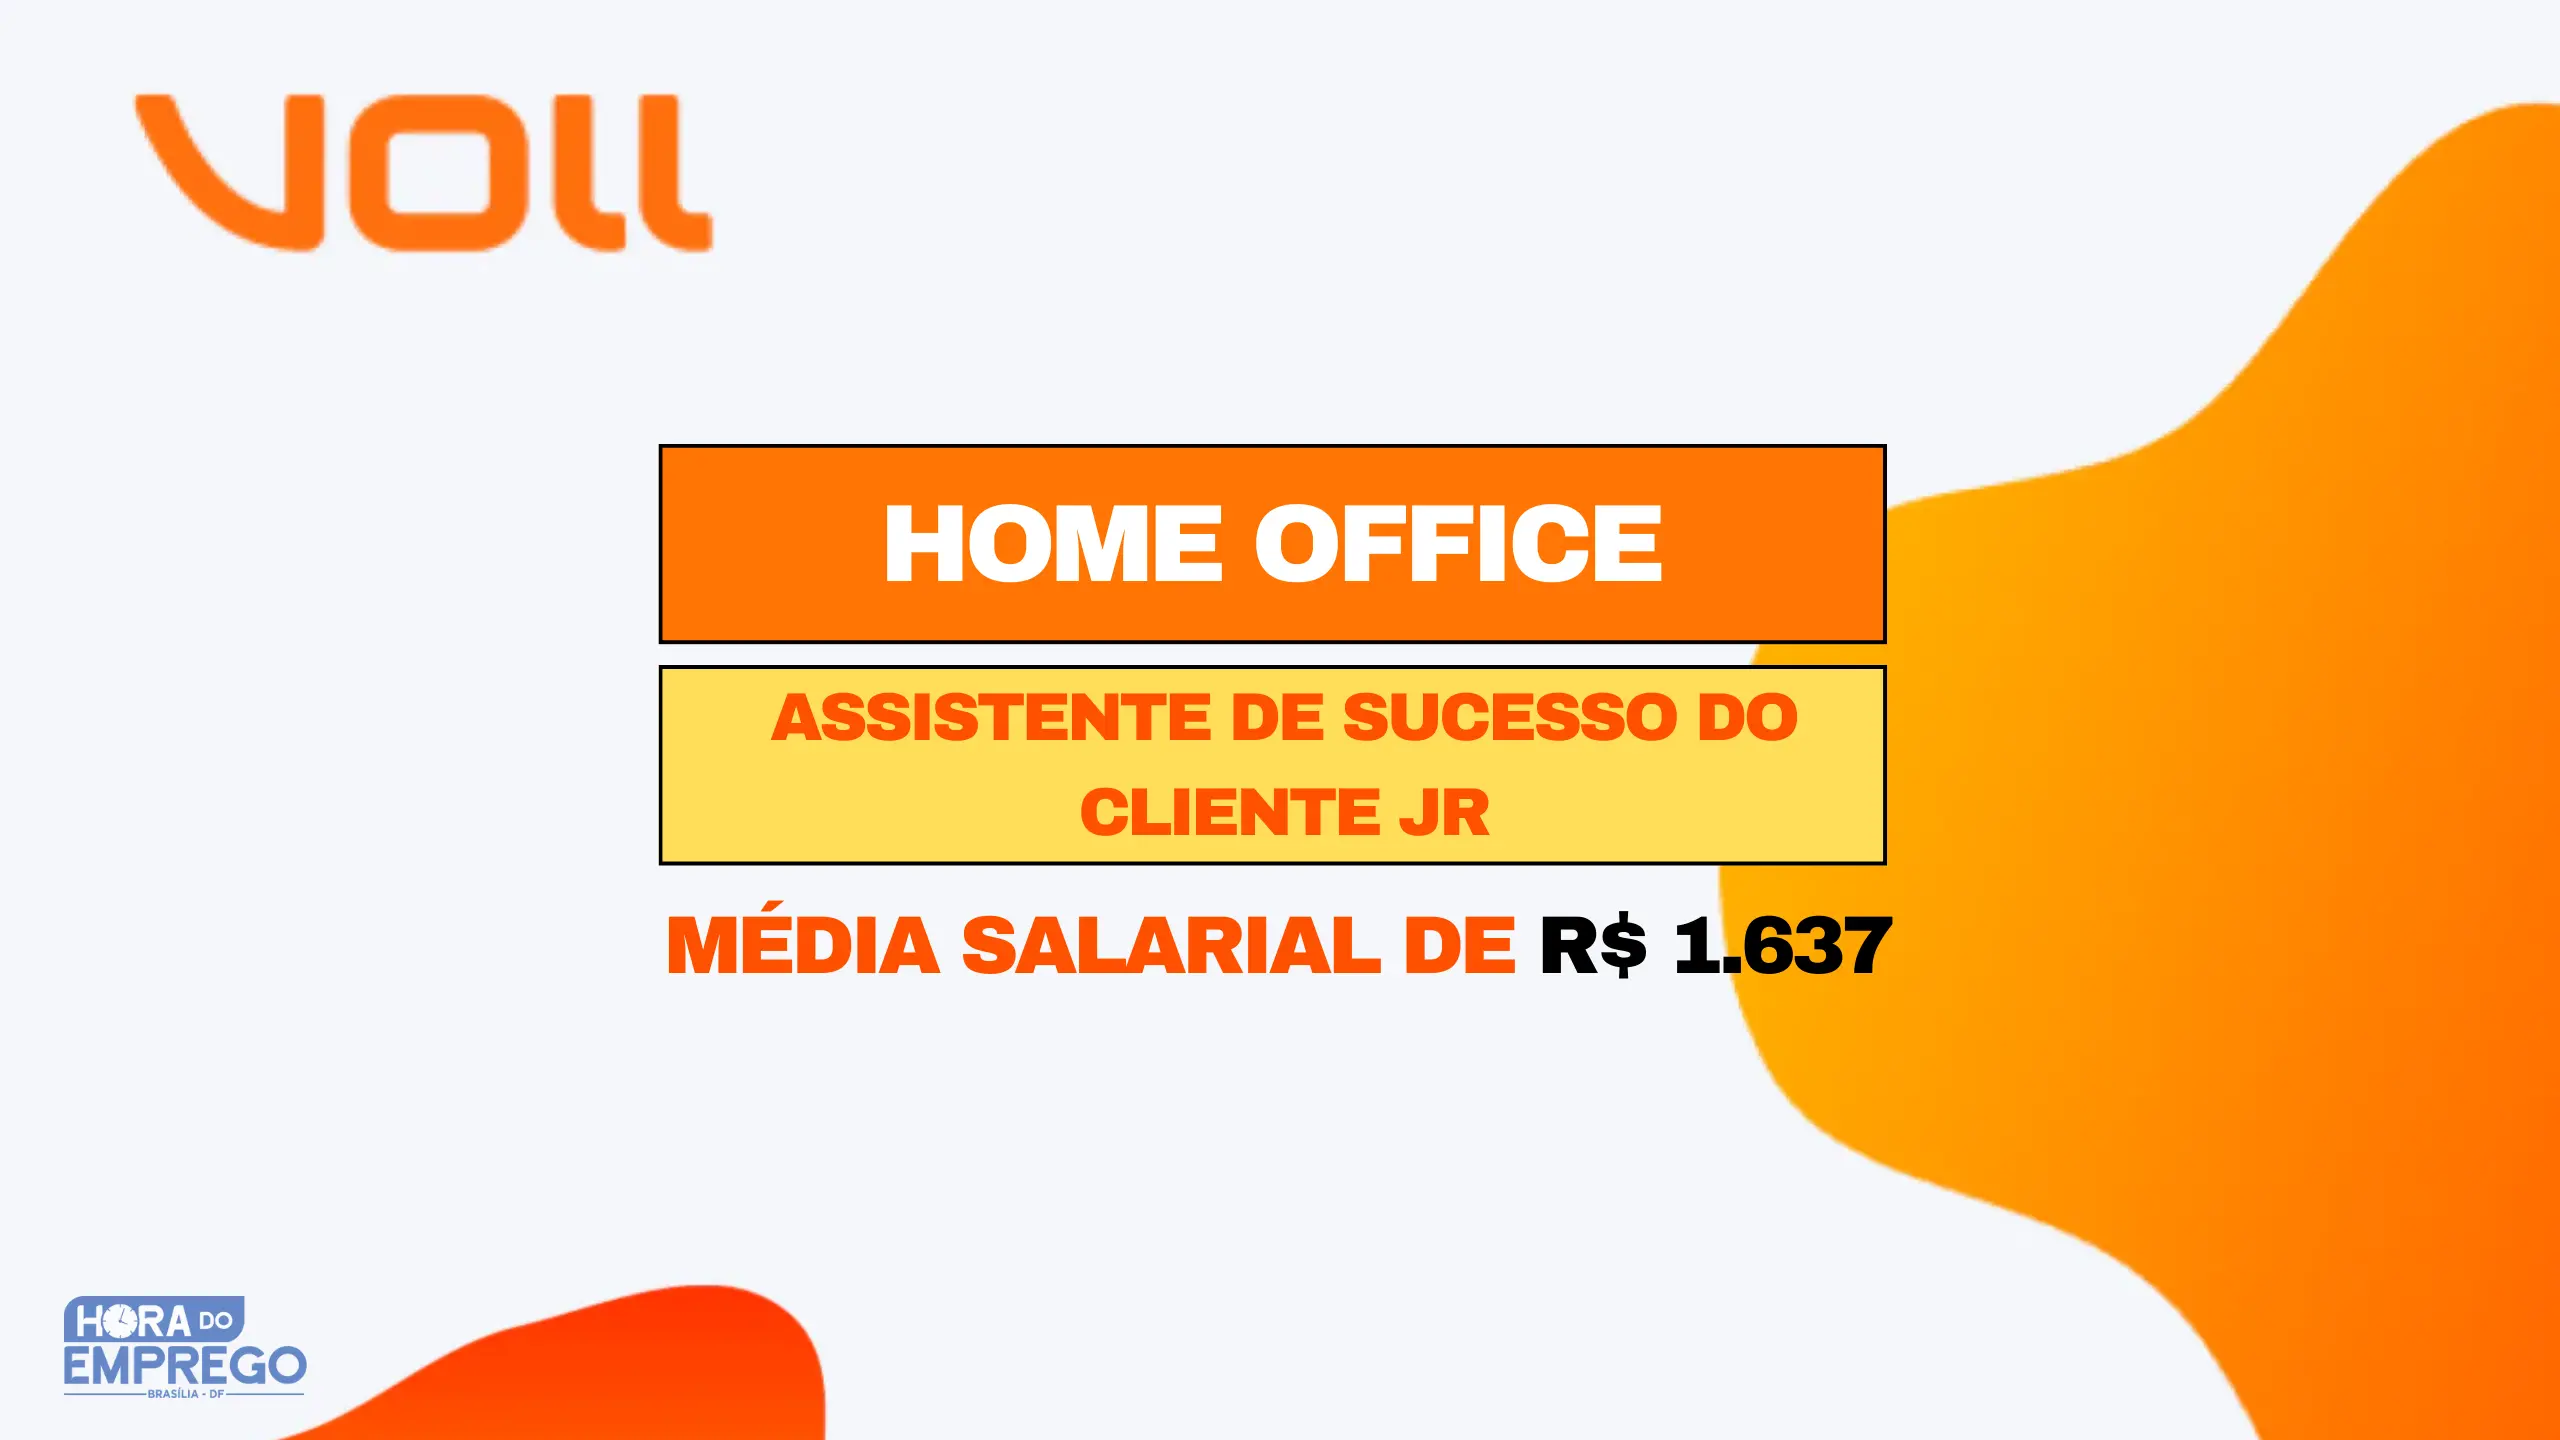 A Empresa VOLL está contratando para Atendimento ao Cliente em HOME OFFICE com média salarial de R$1.637